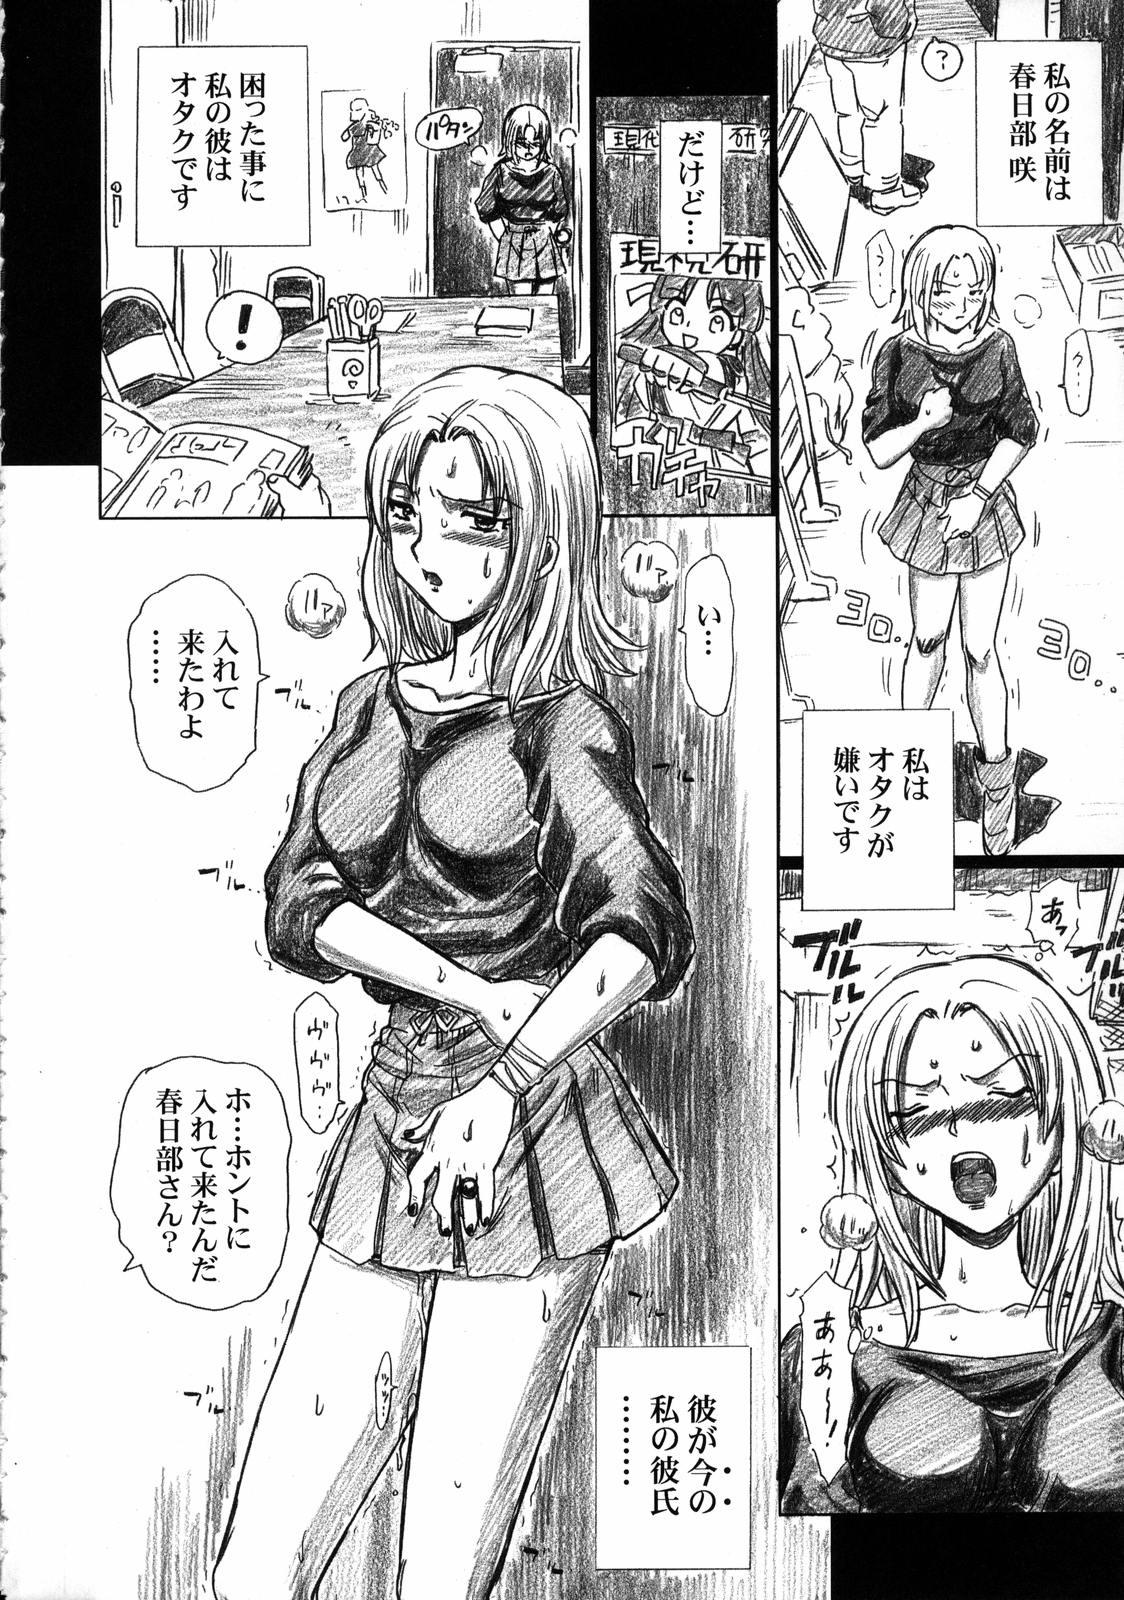 Nude TAIL-MAN SAKI KASUKABE BOOK - Genshiken Sub - Page 3